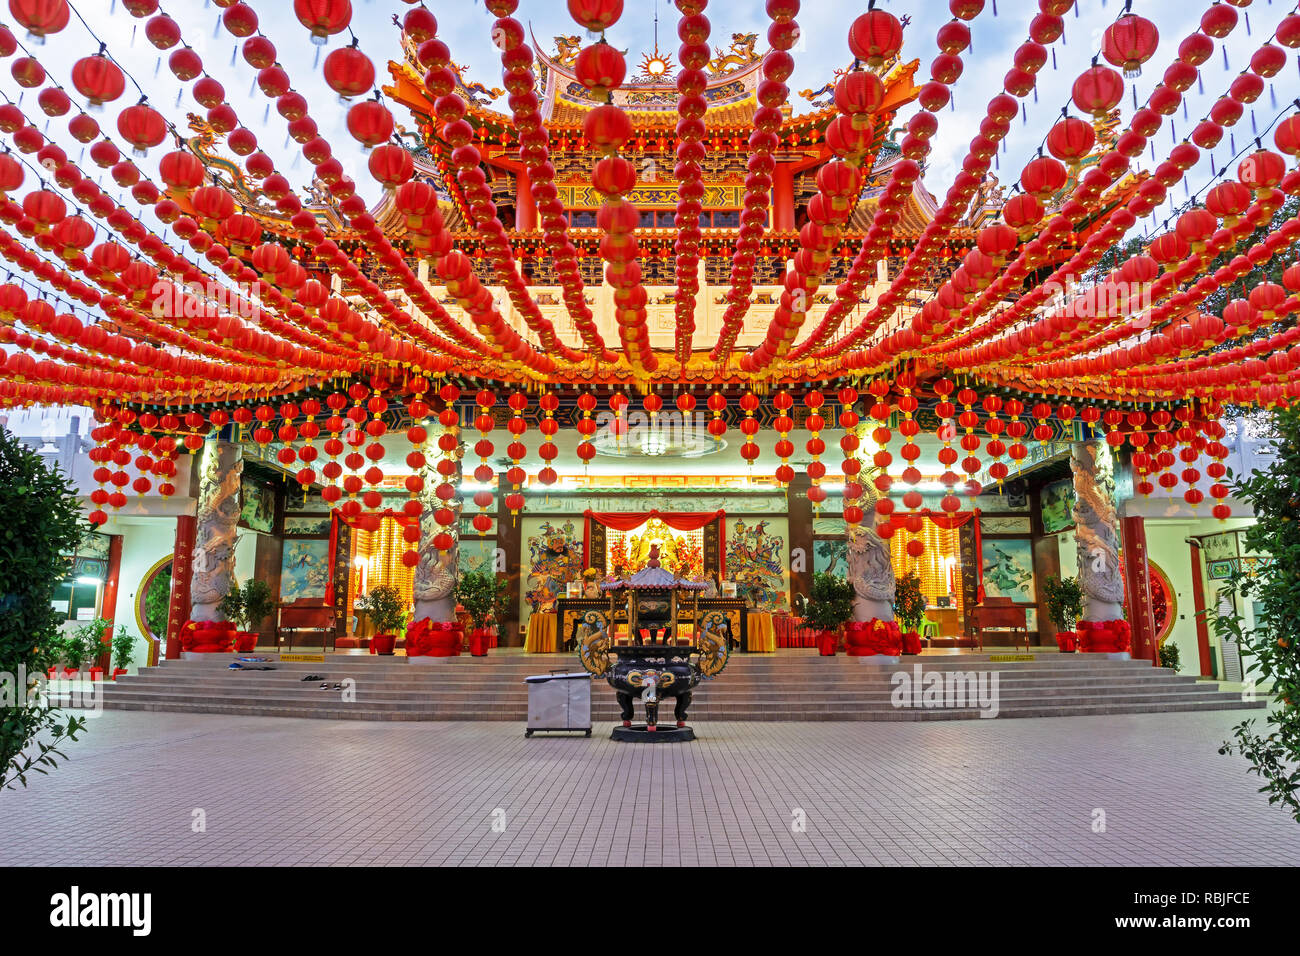 Chinesisches Neues Jahr Laternen Dekoration in Thean Hou, buddhistische Tempel Sehenswürdigkeiten in Kuala Lumpur, Malaysia Stockfoto